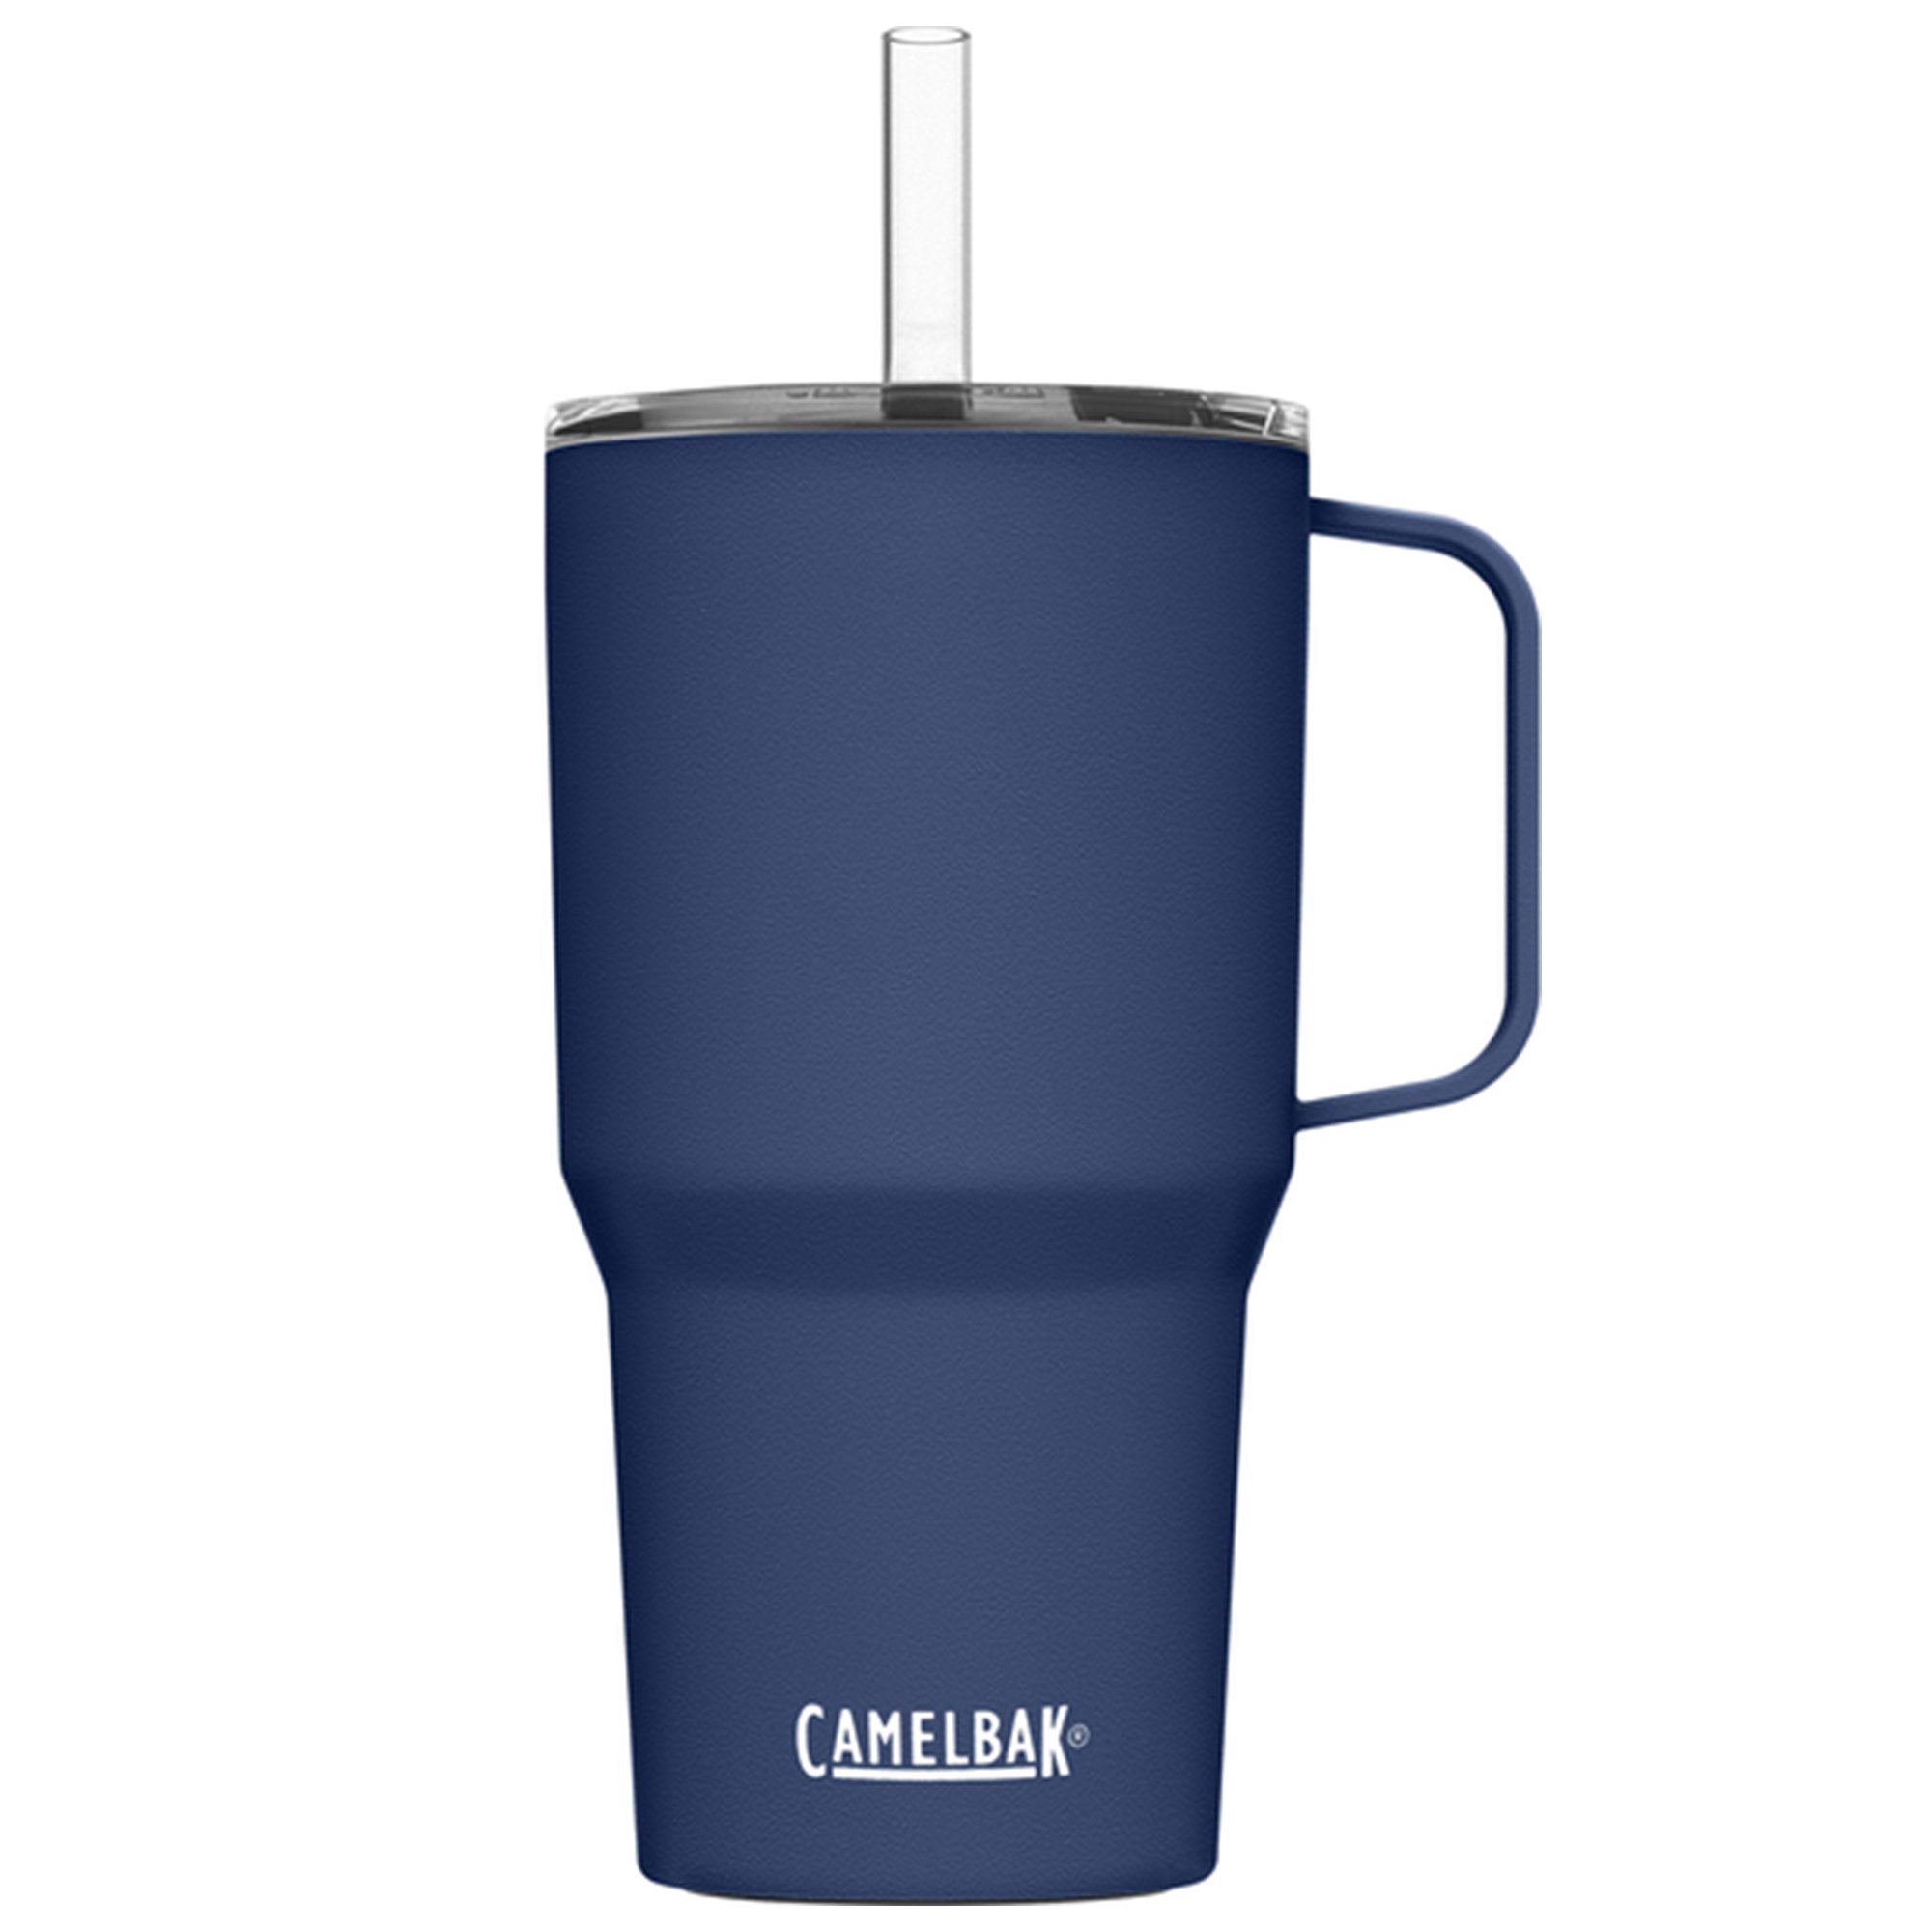 Bilde av Camelbak Straw Mug Termokrus 0.71 Liter, Navy